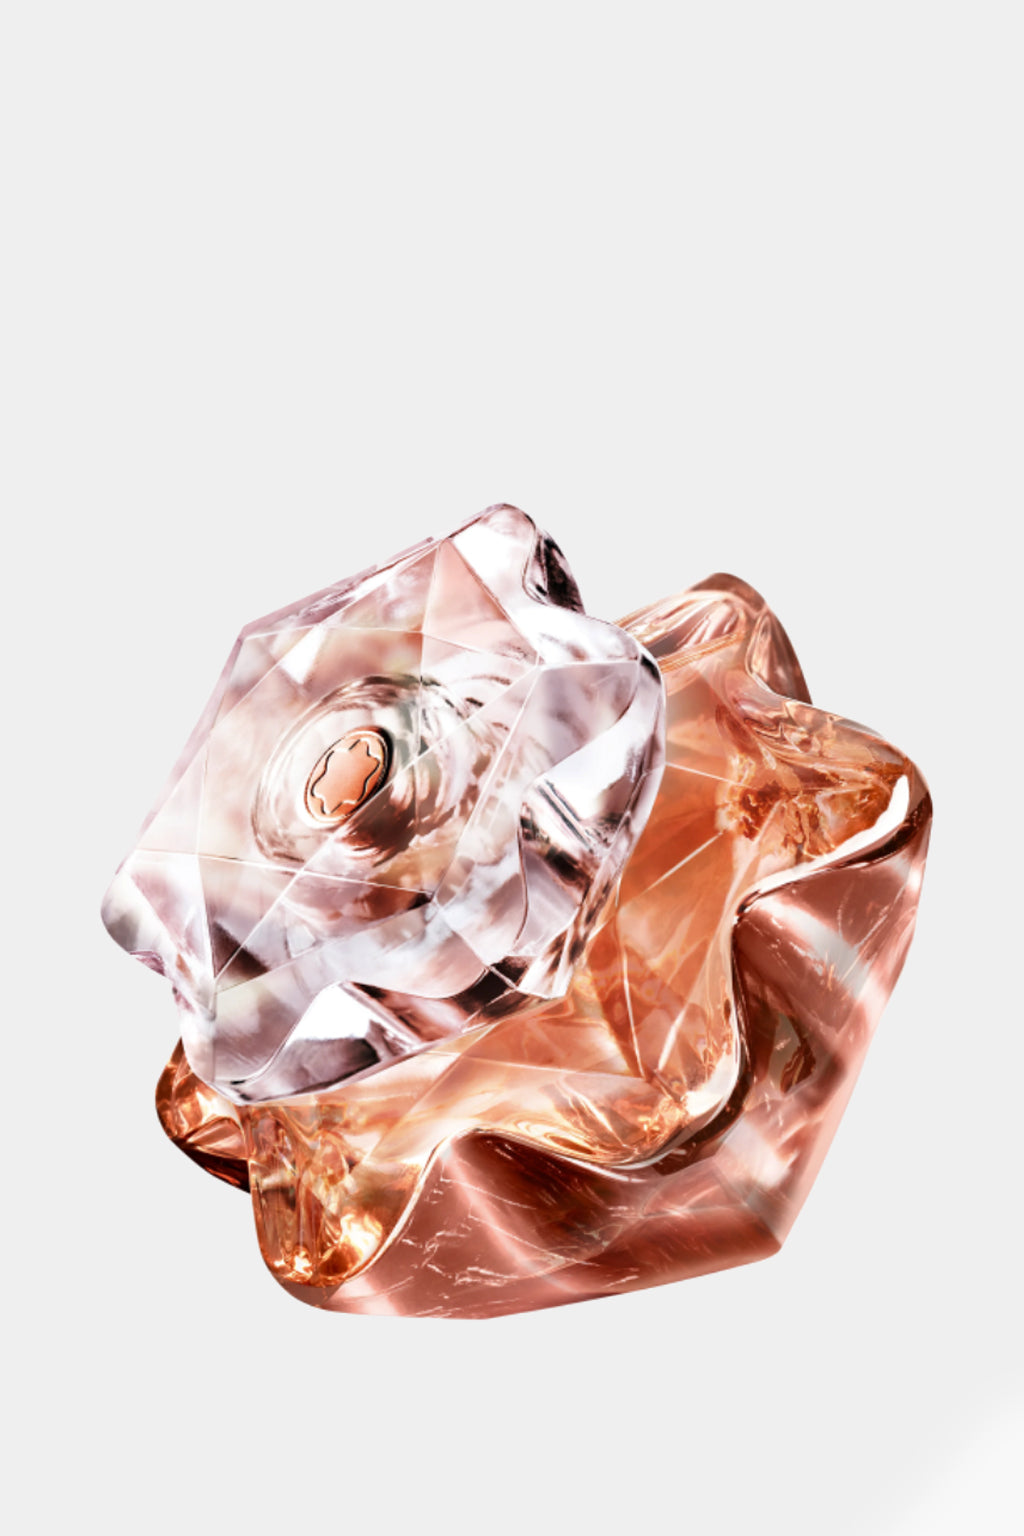 Mont Blanc - Lady Emblem Elixir Eau de Parfum